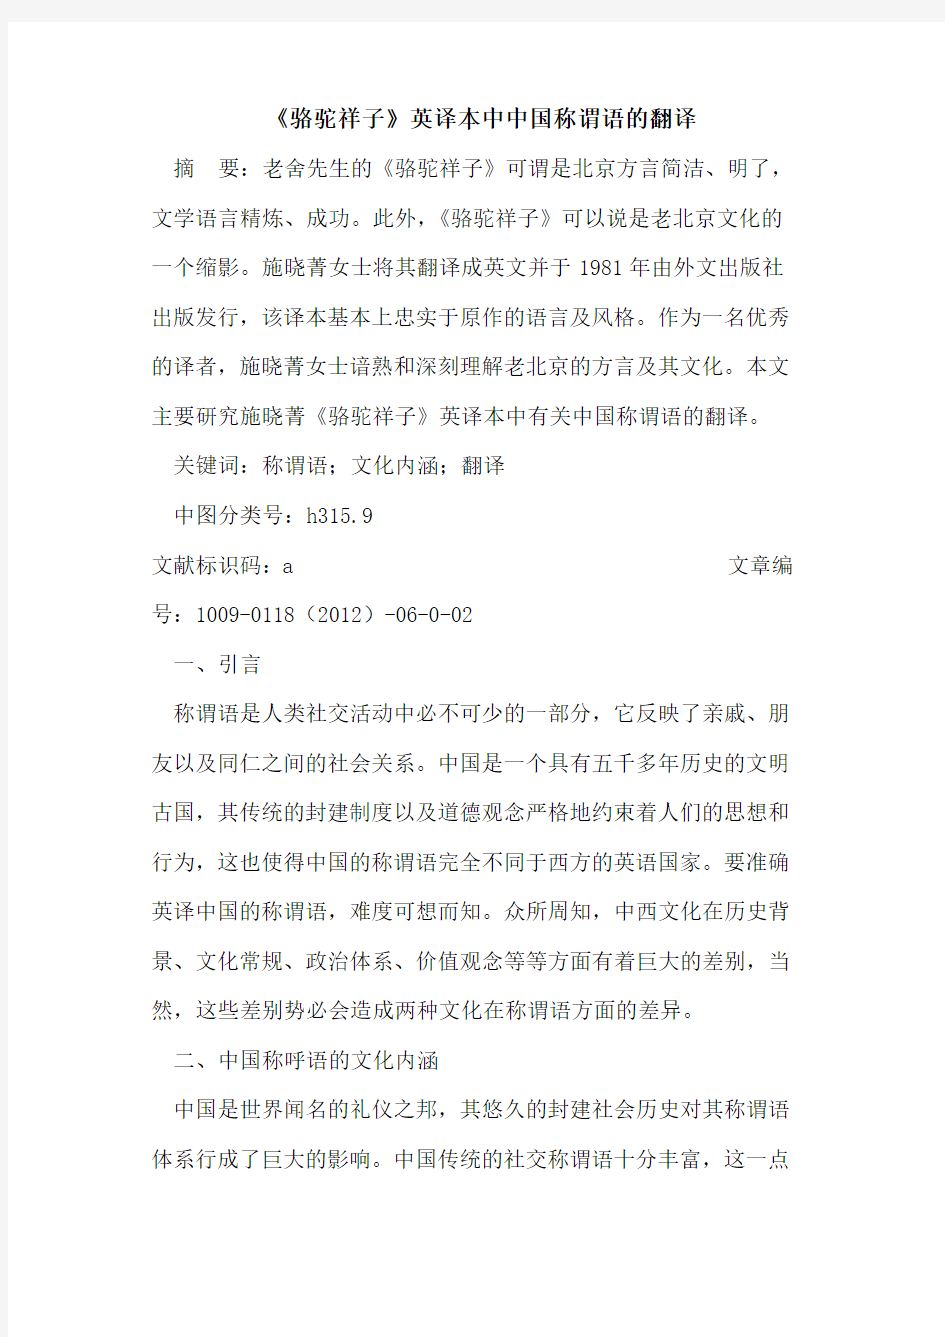 《骆驼祥子》英译本中中国称谓语的翻译